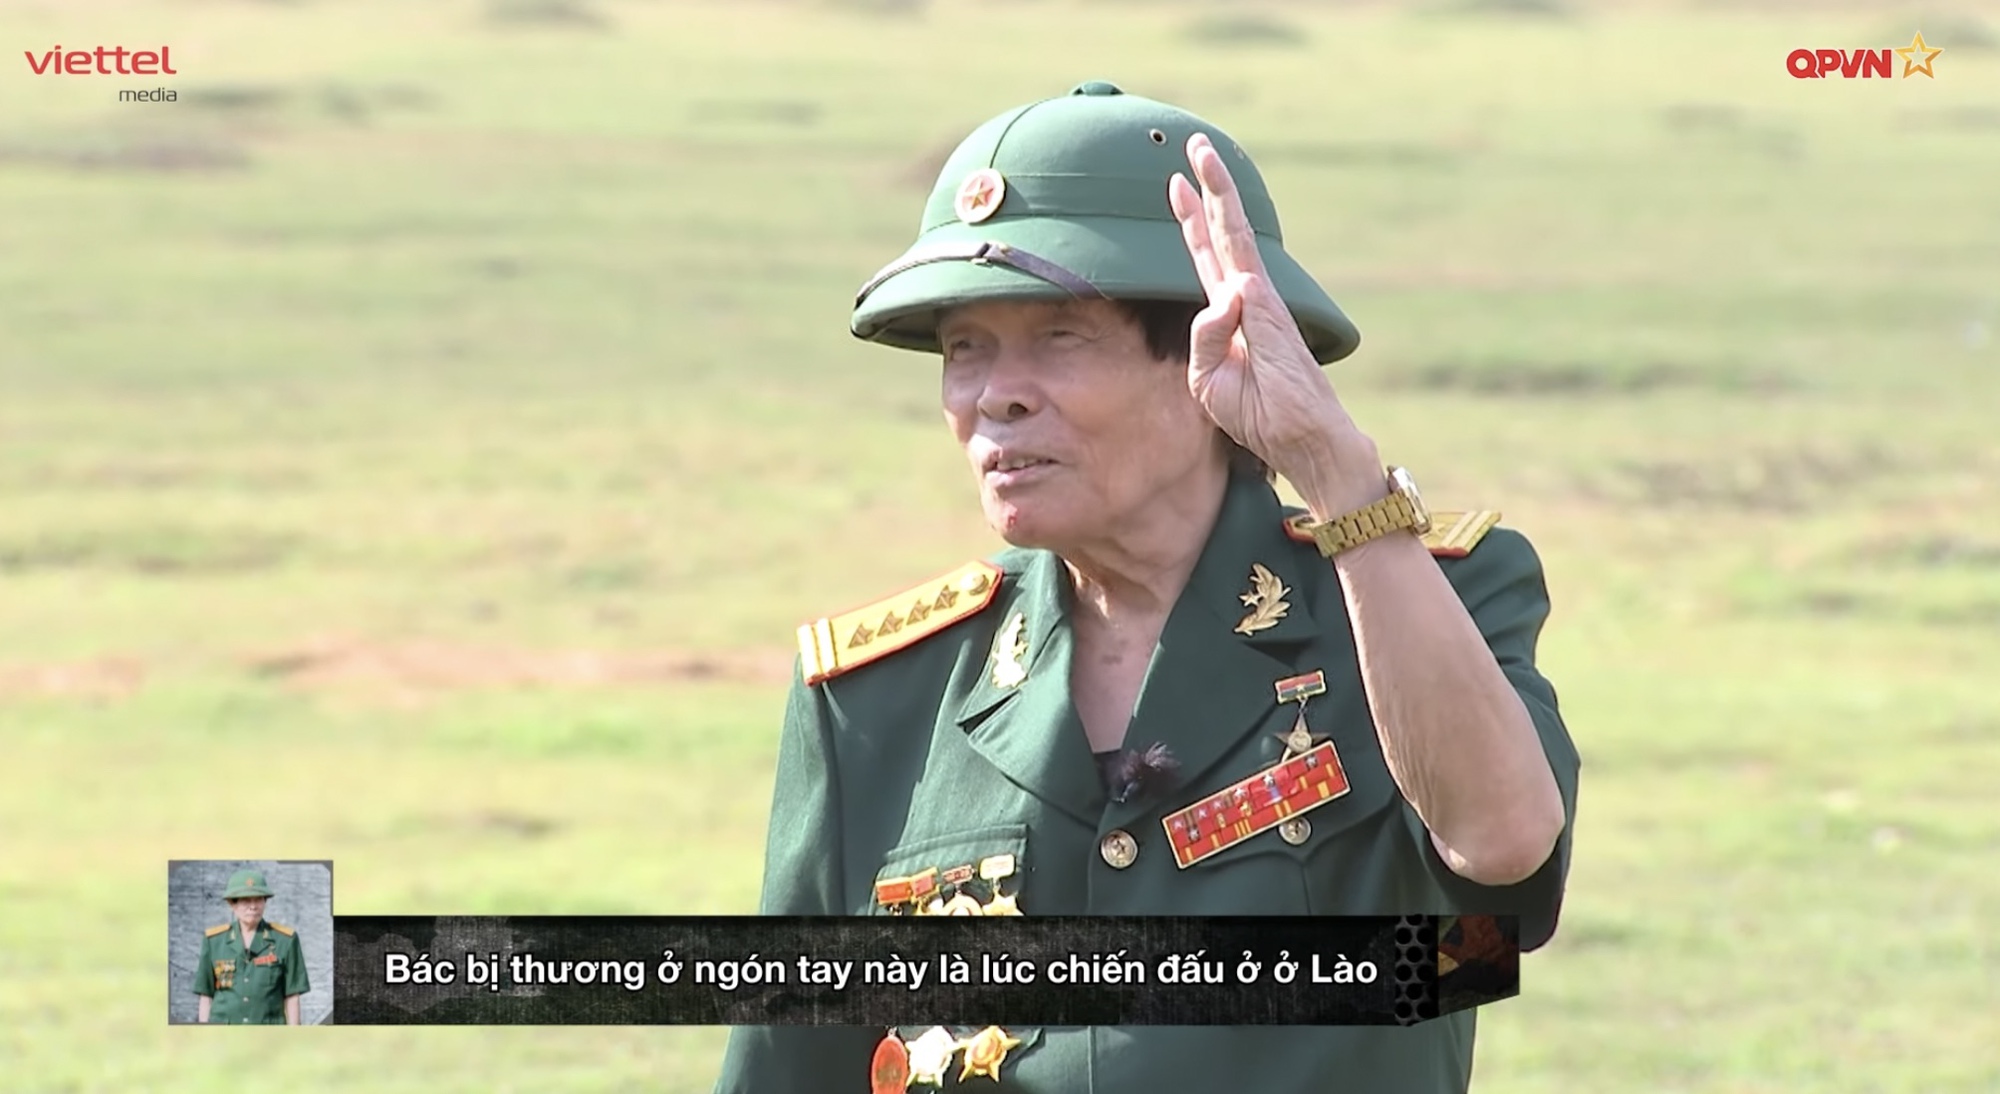 Tuấn Trần, Huỳnh Lập xúc động khi gặp gỡ người anh hùng trong trận đánh huyền thoại ở Quảng Trị- Ảnh 1.